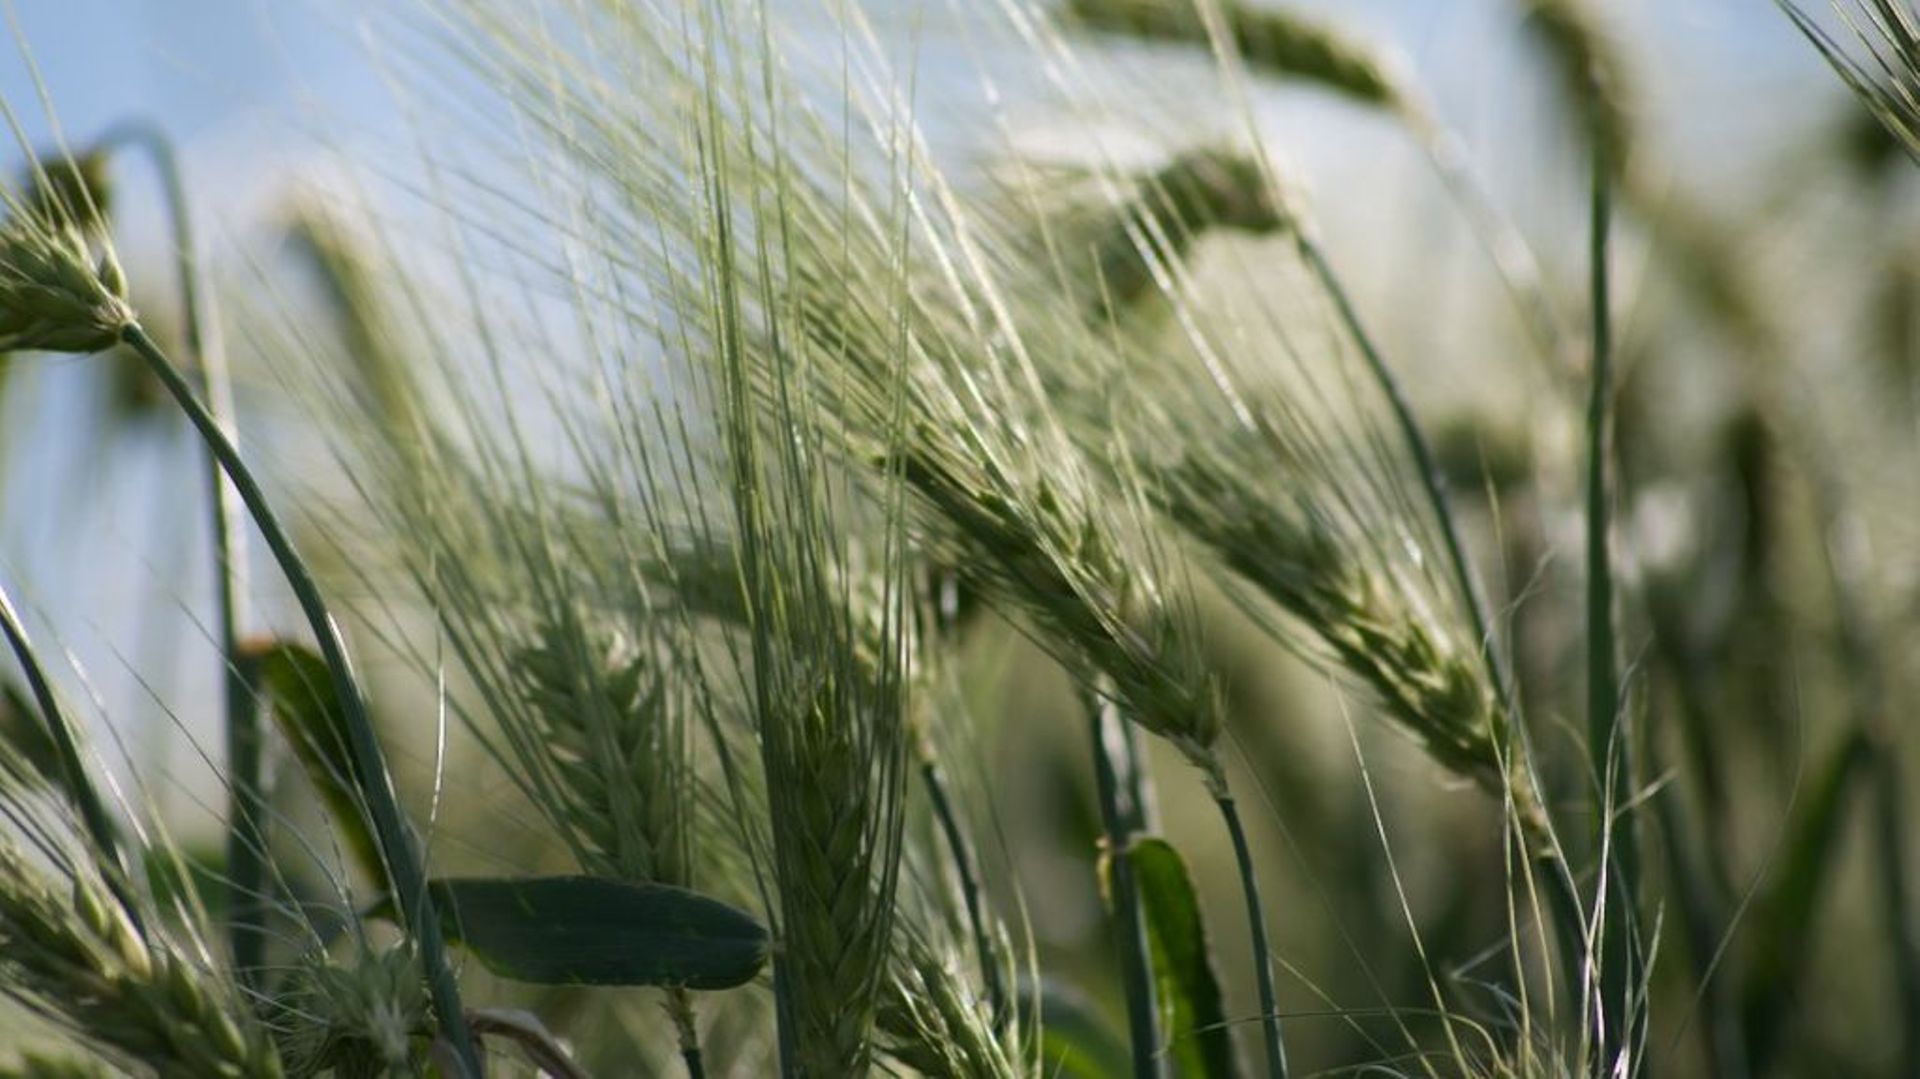 Le secteur agricole belge enregistrerait une perte de rendement en céréales "bien au-delà de 30%"